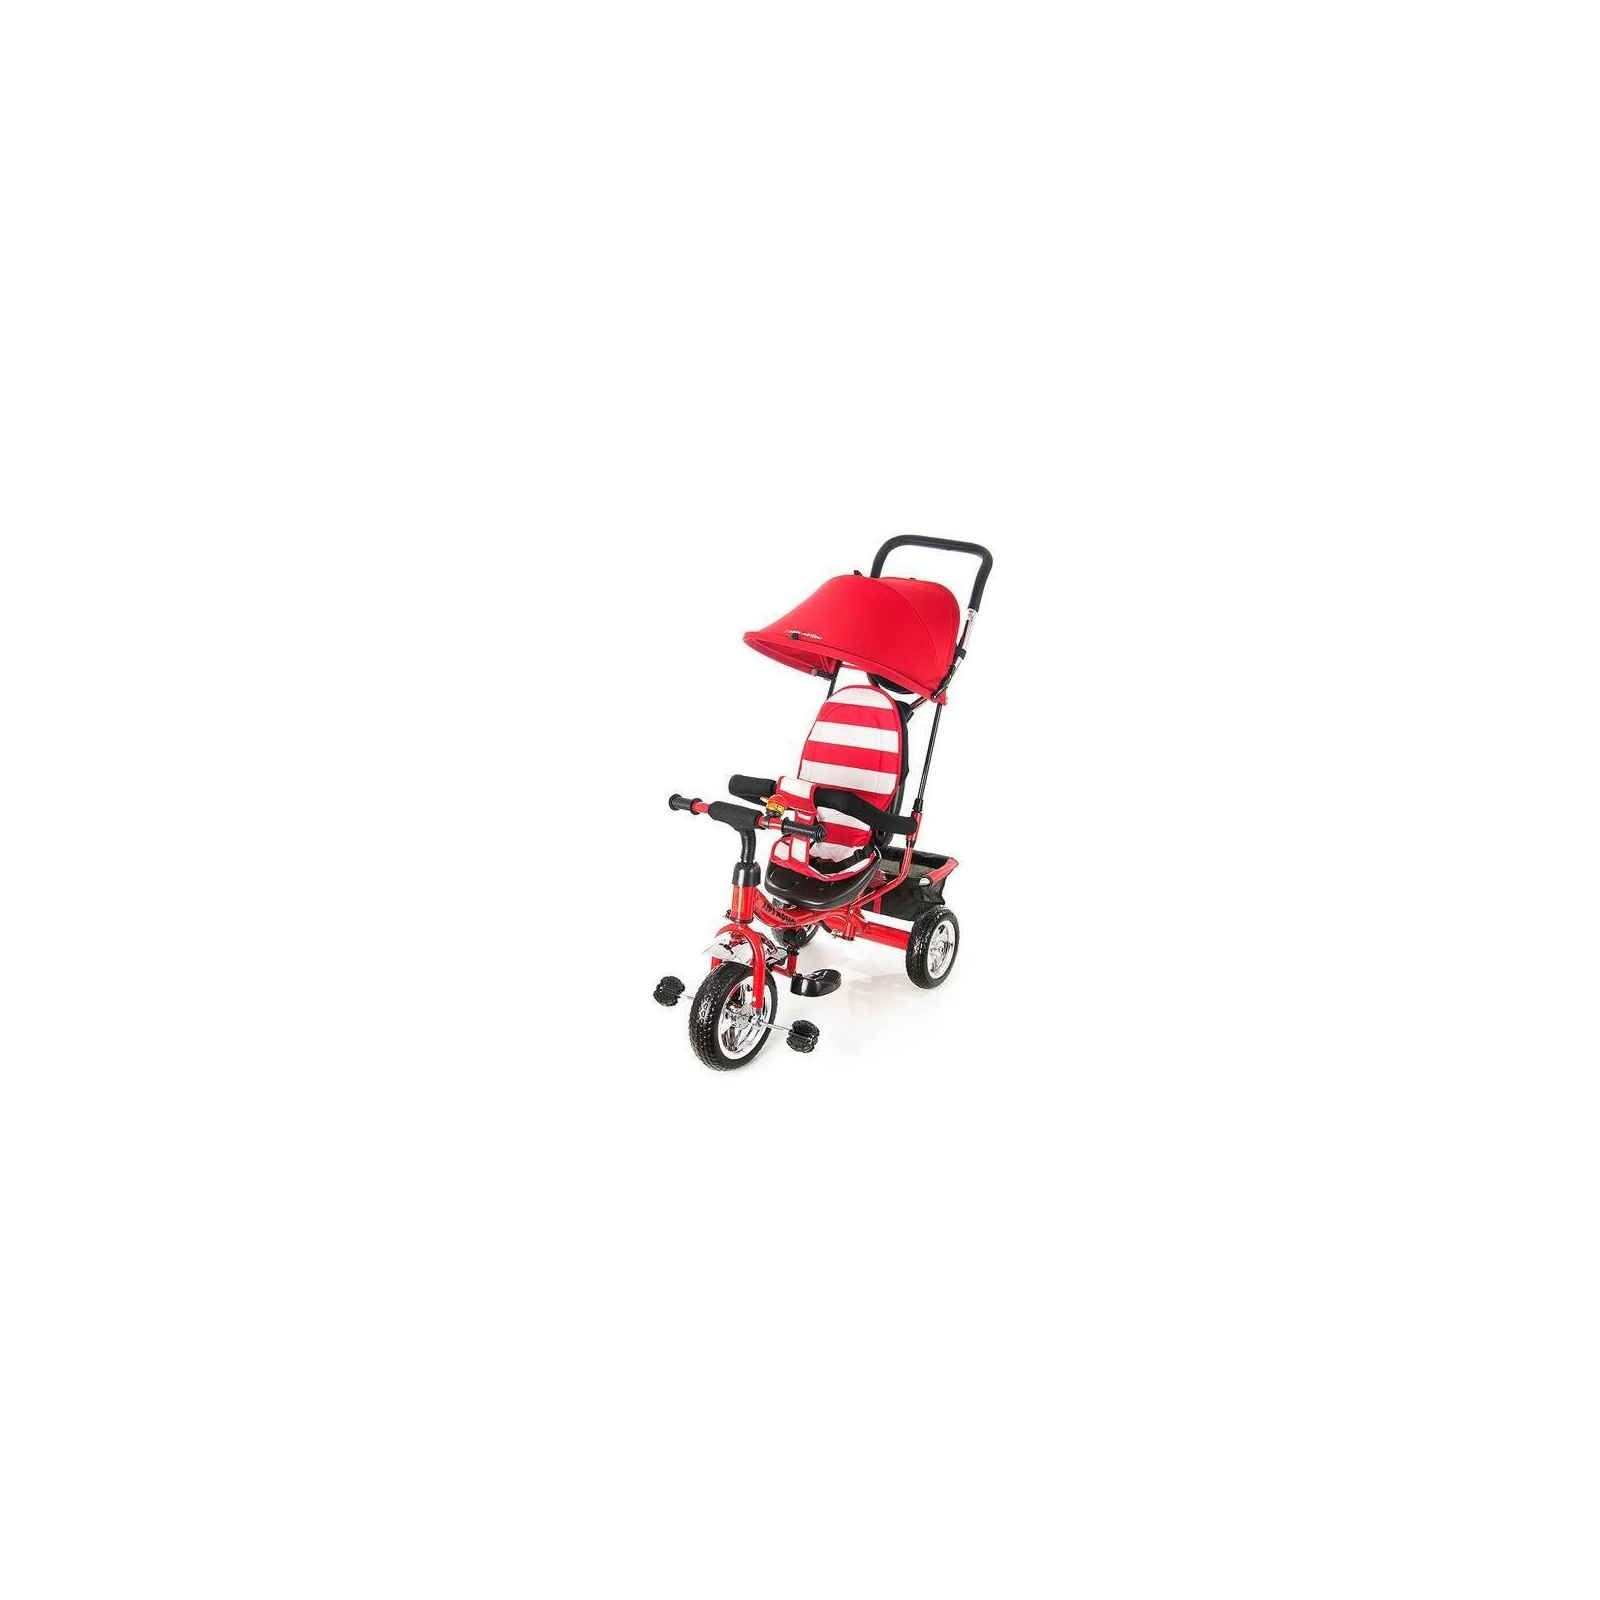 Детский велосипед KidzMotion Tobi Junior RED (115001/red) изображение 2